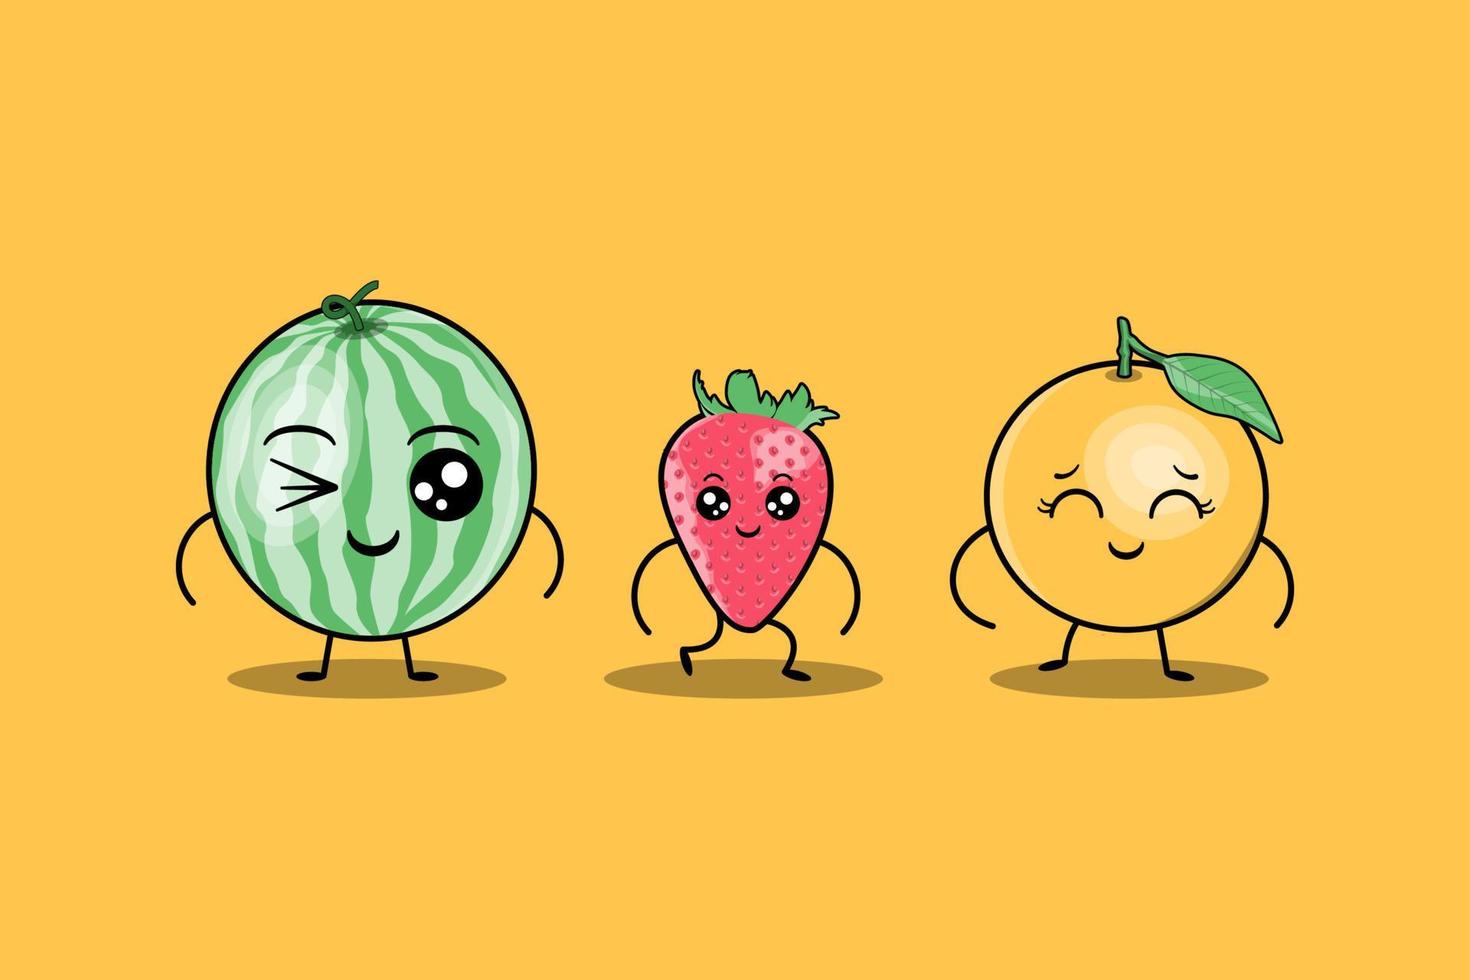 vetor de personagens de desenhos animados de frutas coloridas kawaii bonito conjunto com muitas expressões